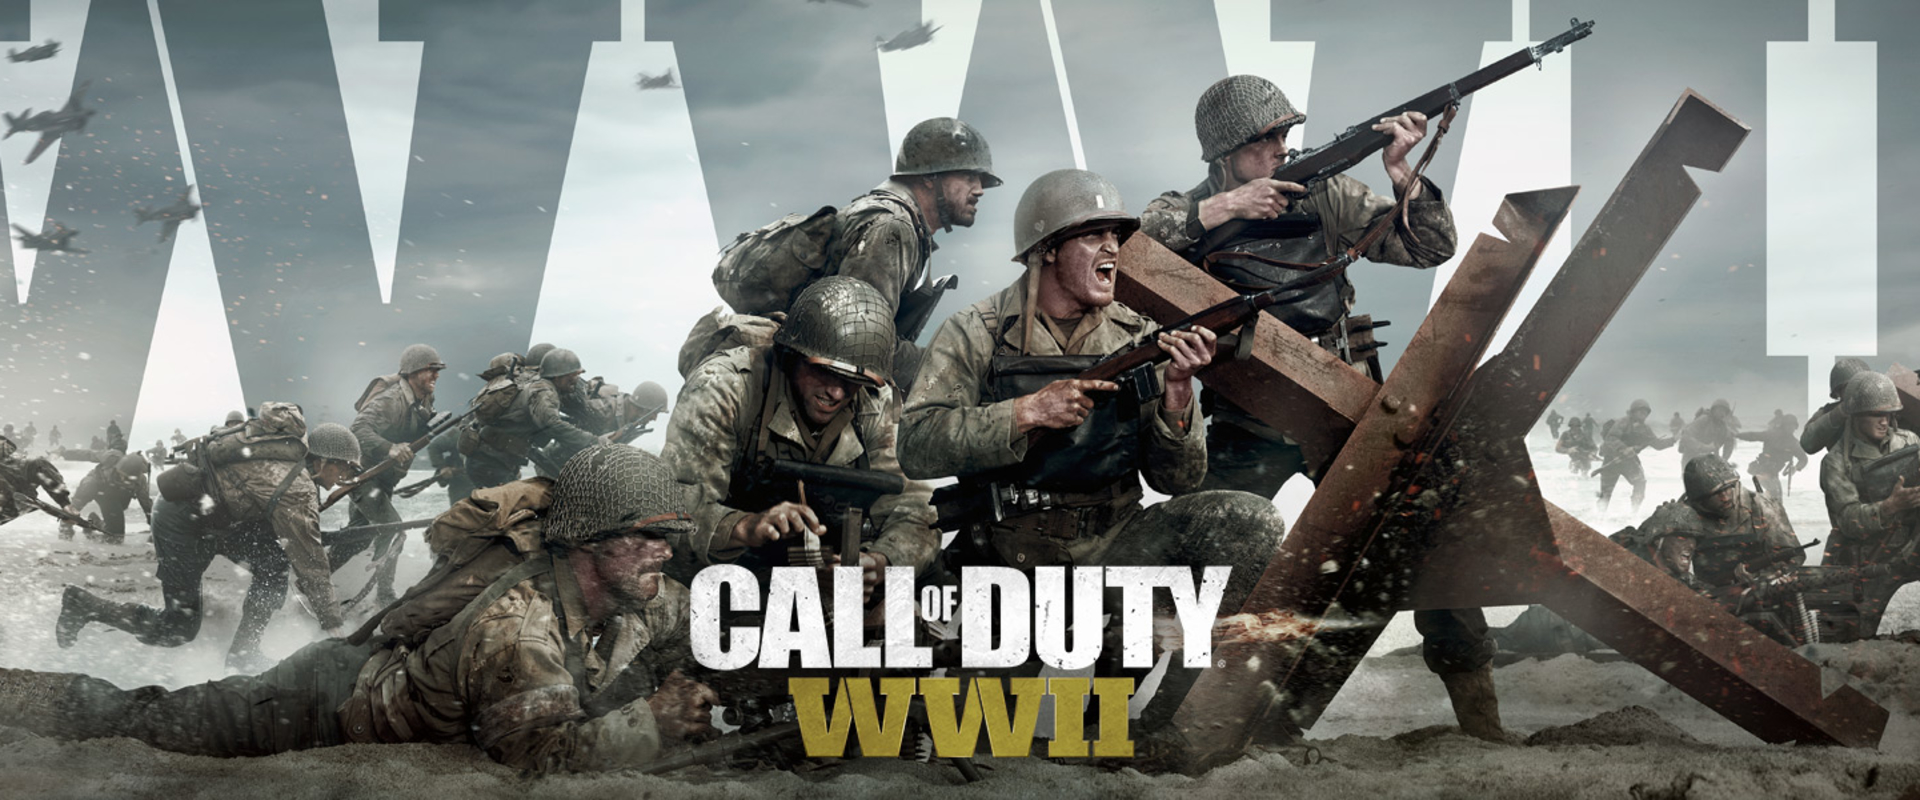 Megérkezett a Call of Duty: WWII sztorielőzetese!